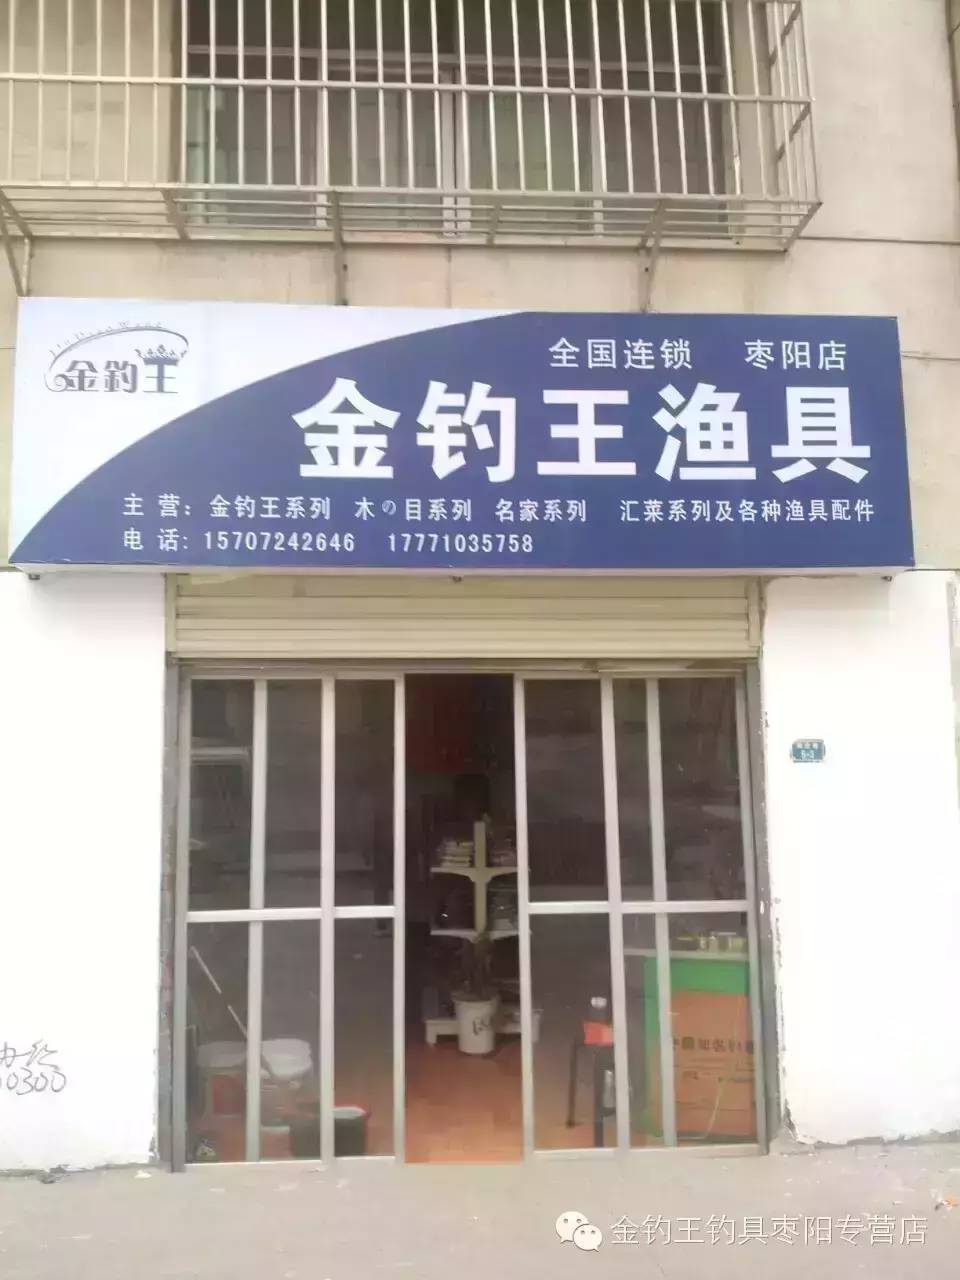 金钓王渔具枣阳店试营业